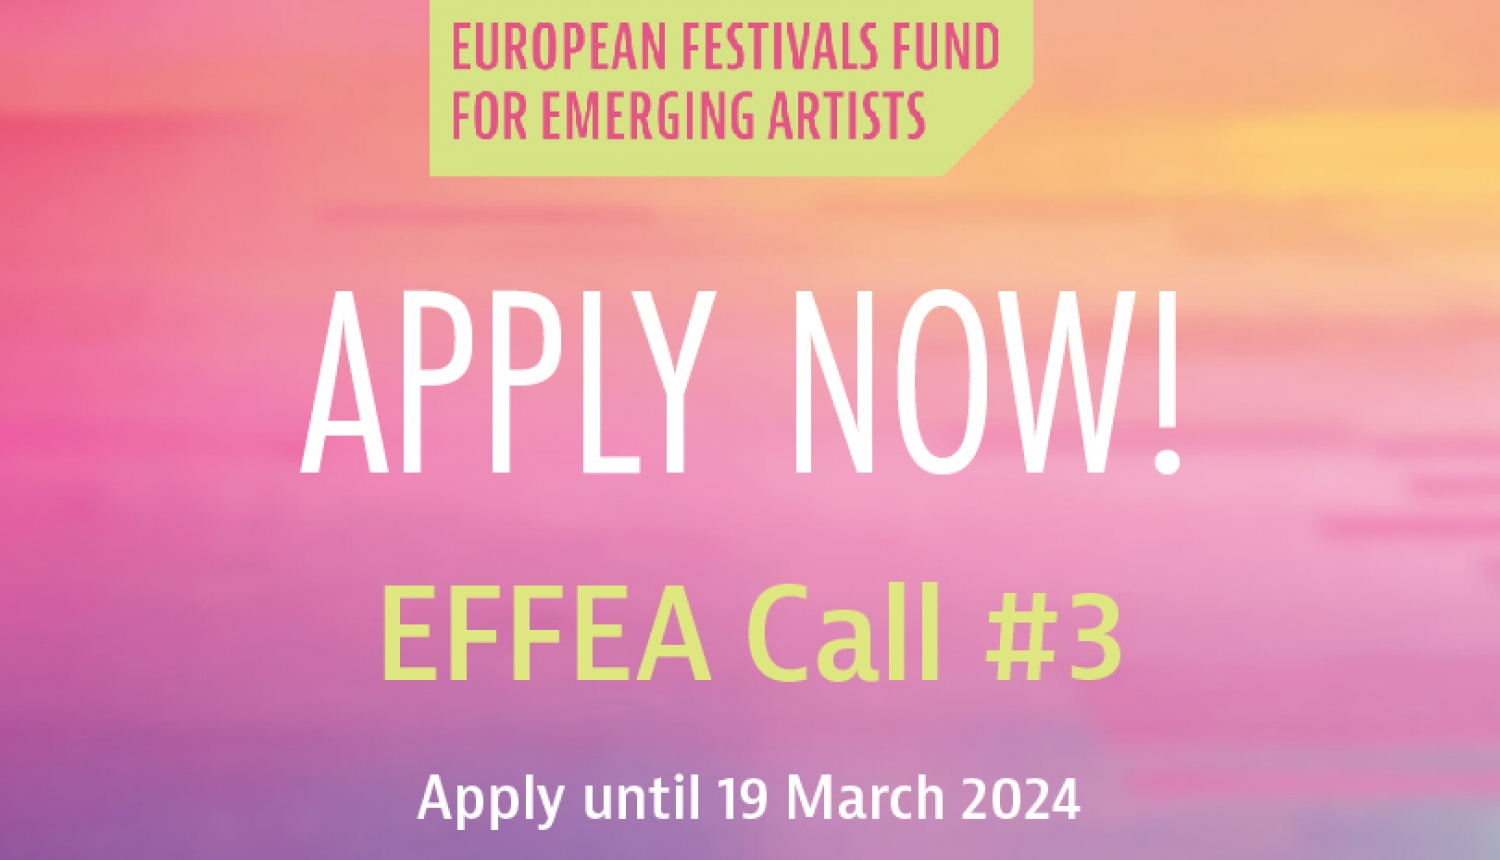 EFFEA uzsaukums festivāliem